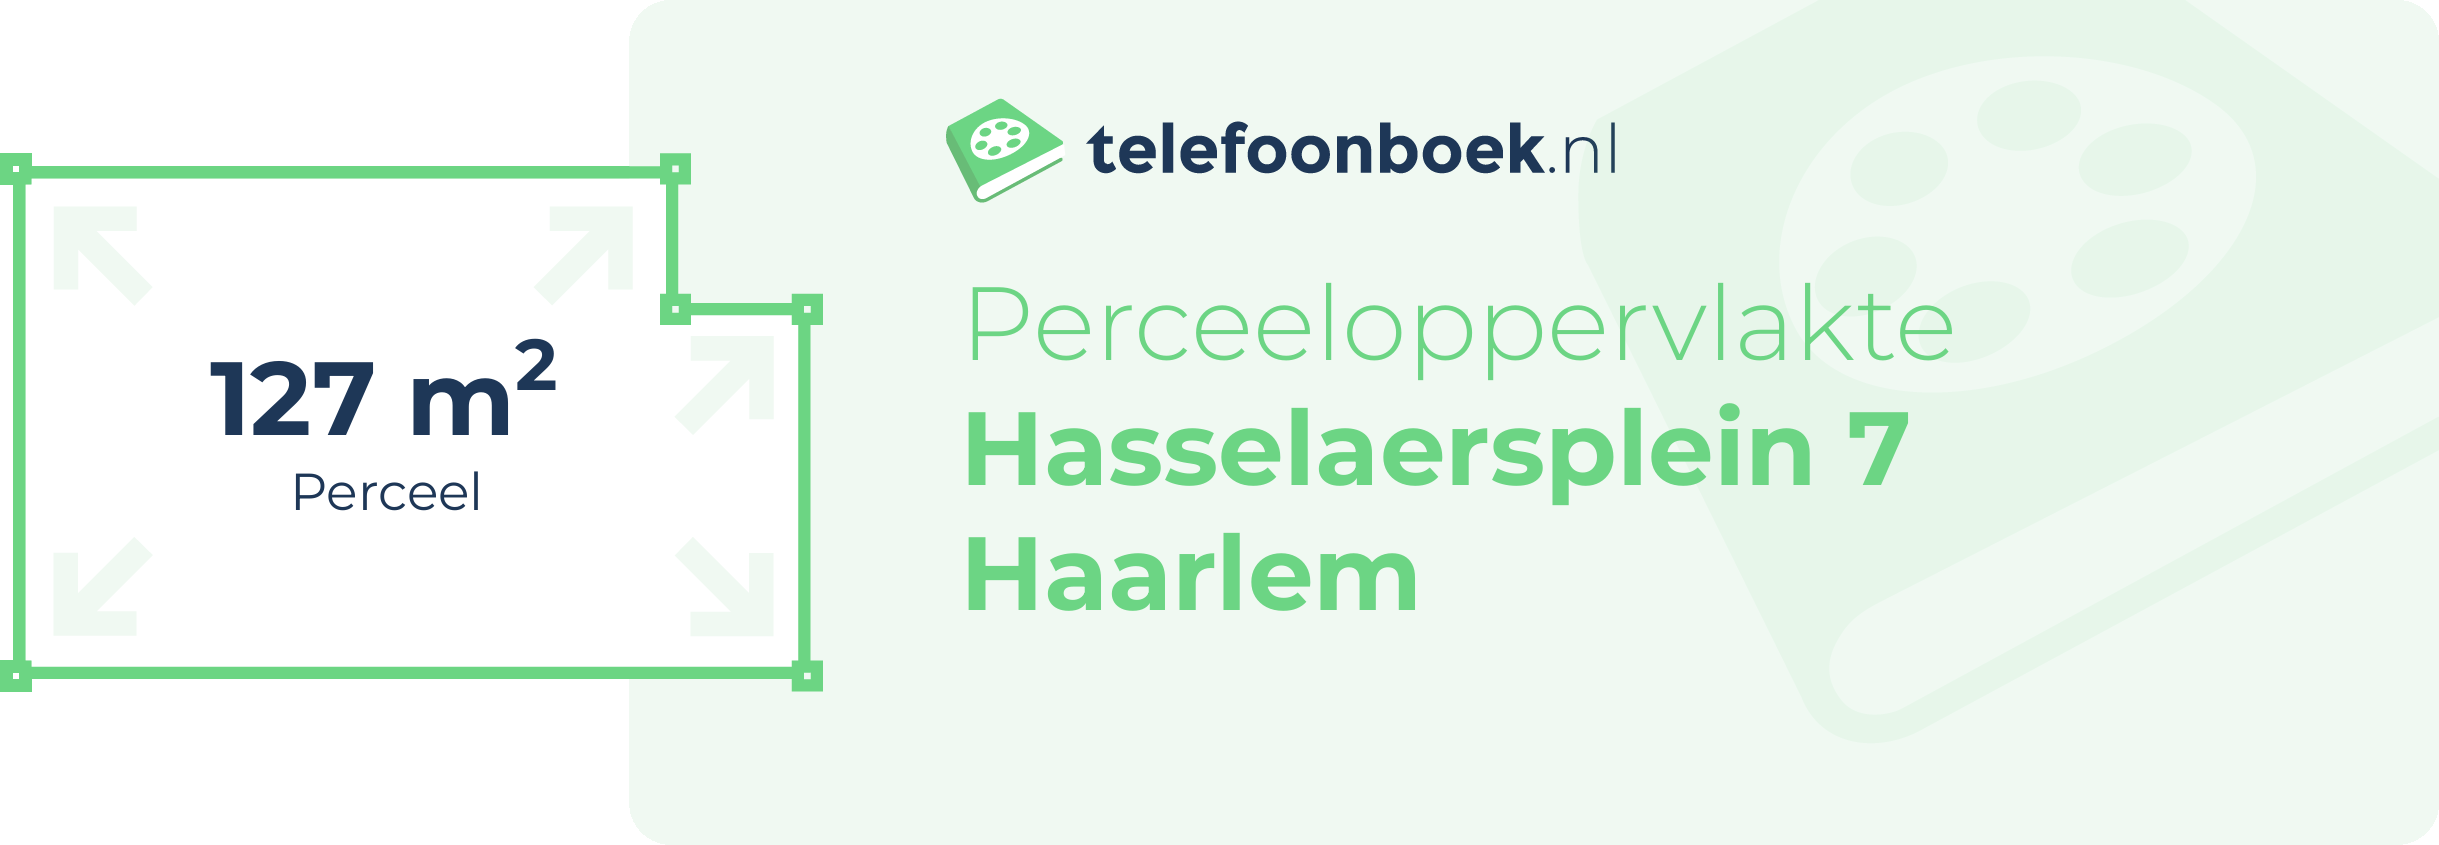 Perceeloppervlakte Hasselaersplein 7 Haarlem